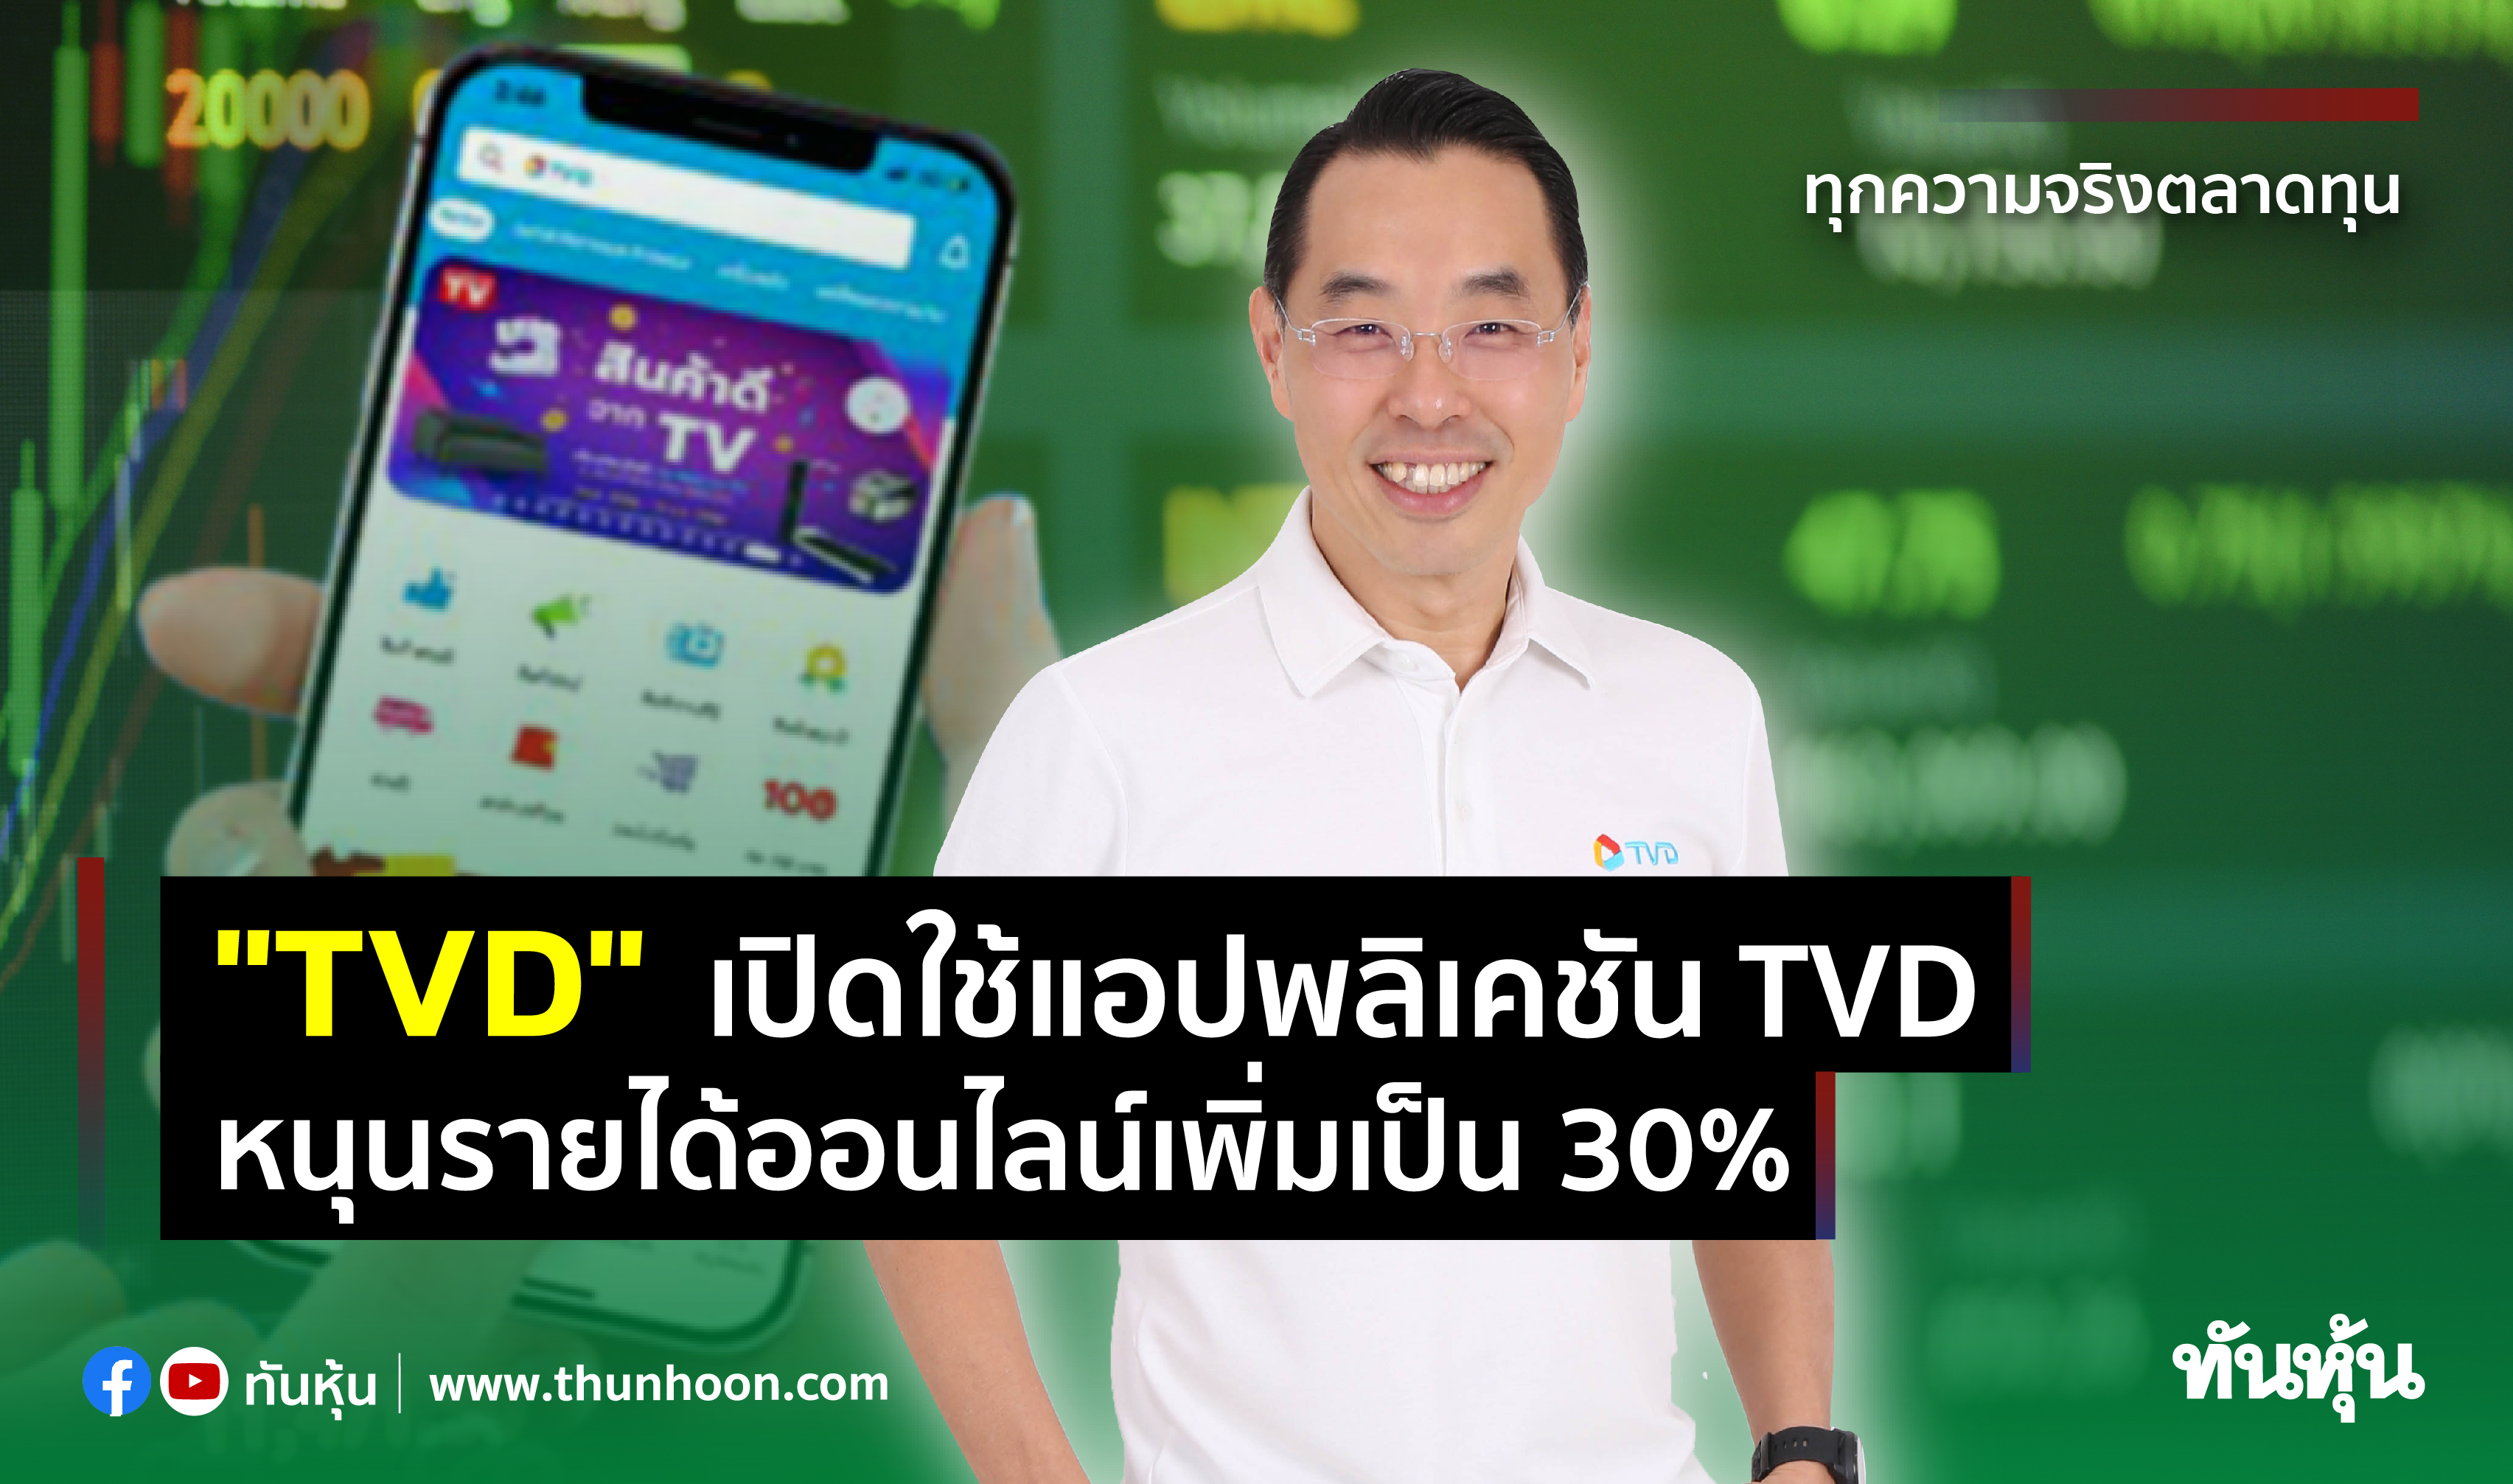 "TVD" เปิดใช้แอปพลิเคชัน TVD หนุนรายได้ออนไลน์เพิ่มเป็น 30%